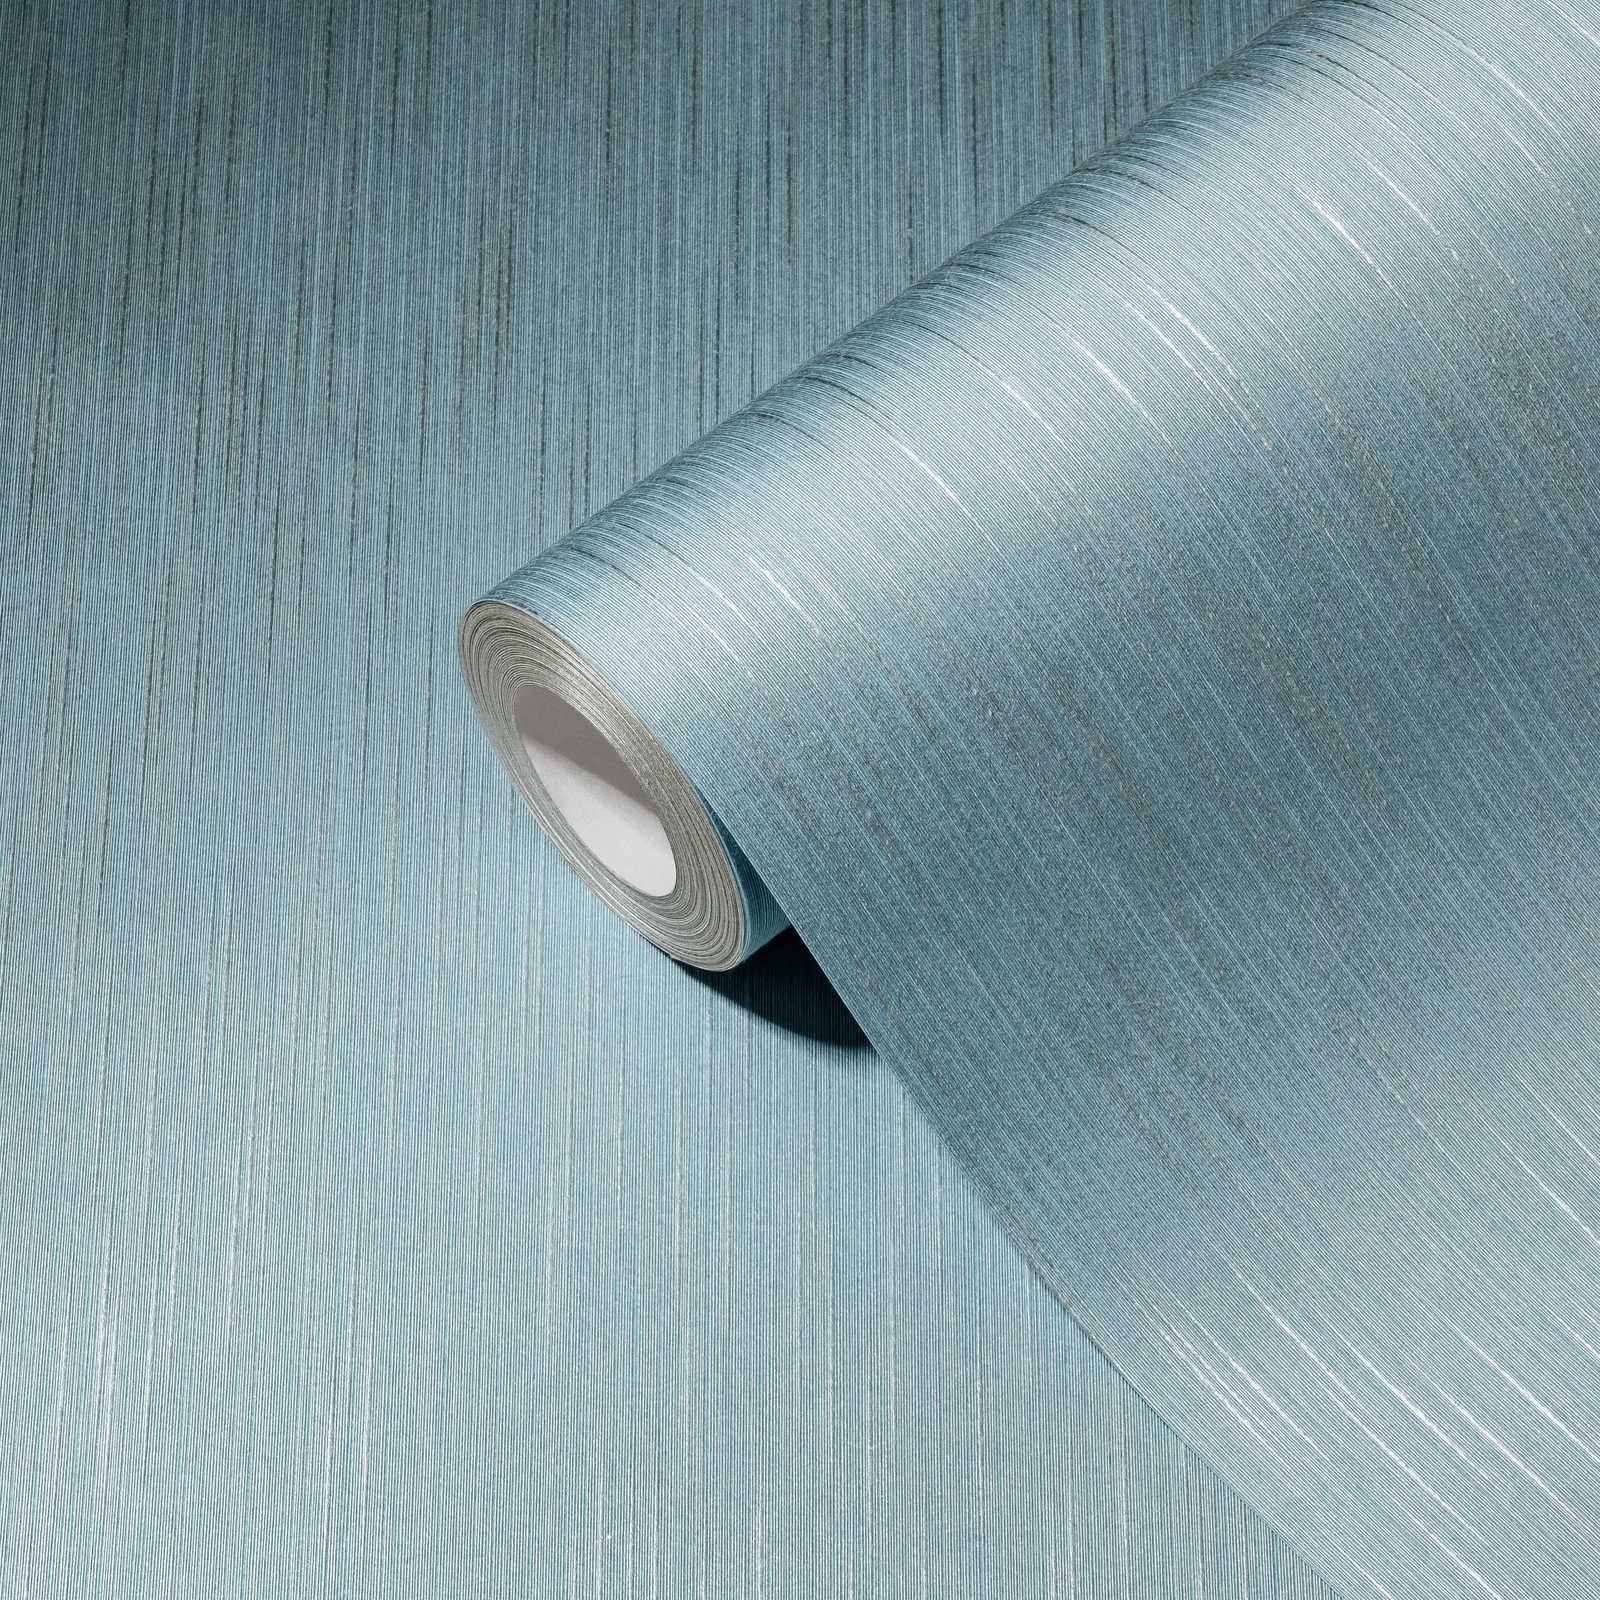             Papel Pintado Gris Azul con Efecto Textura y Moteado y Efecto Textil
        